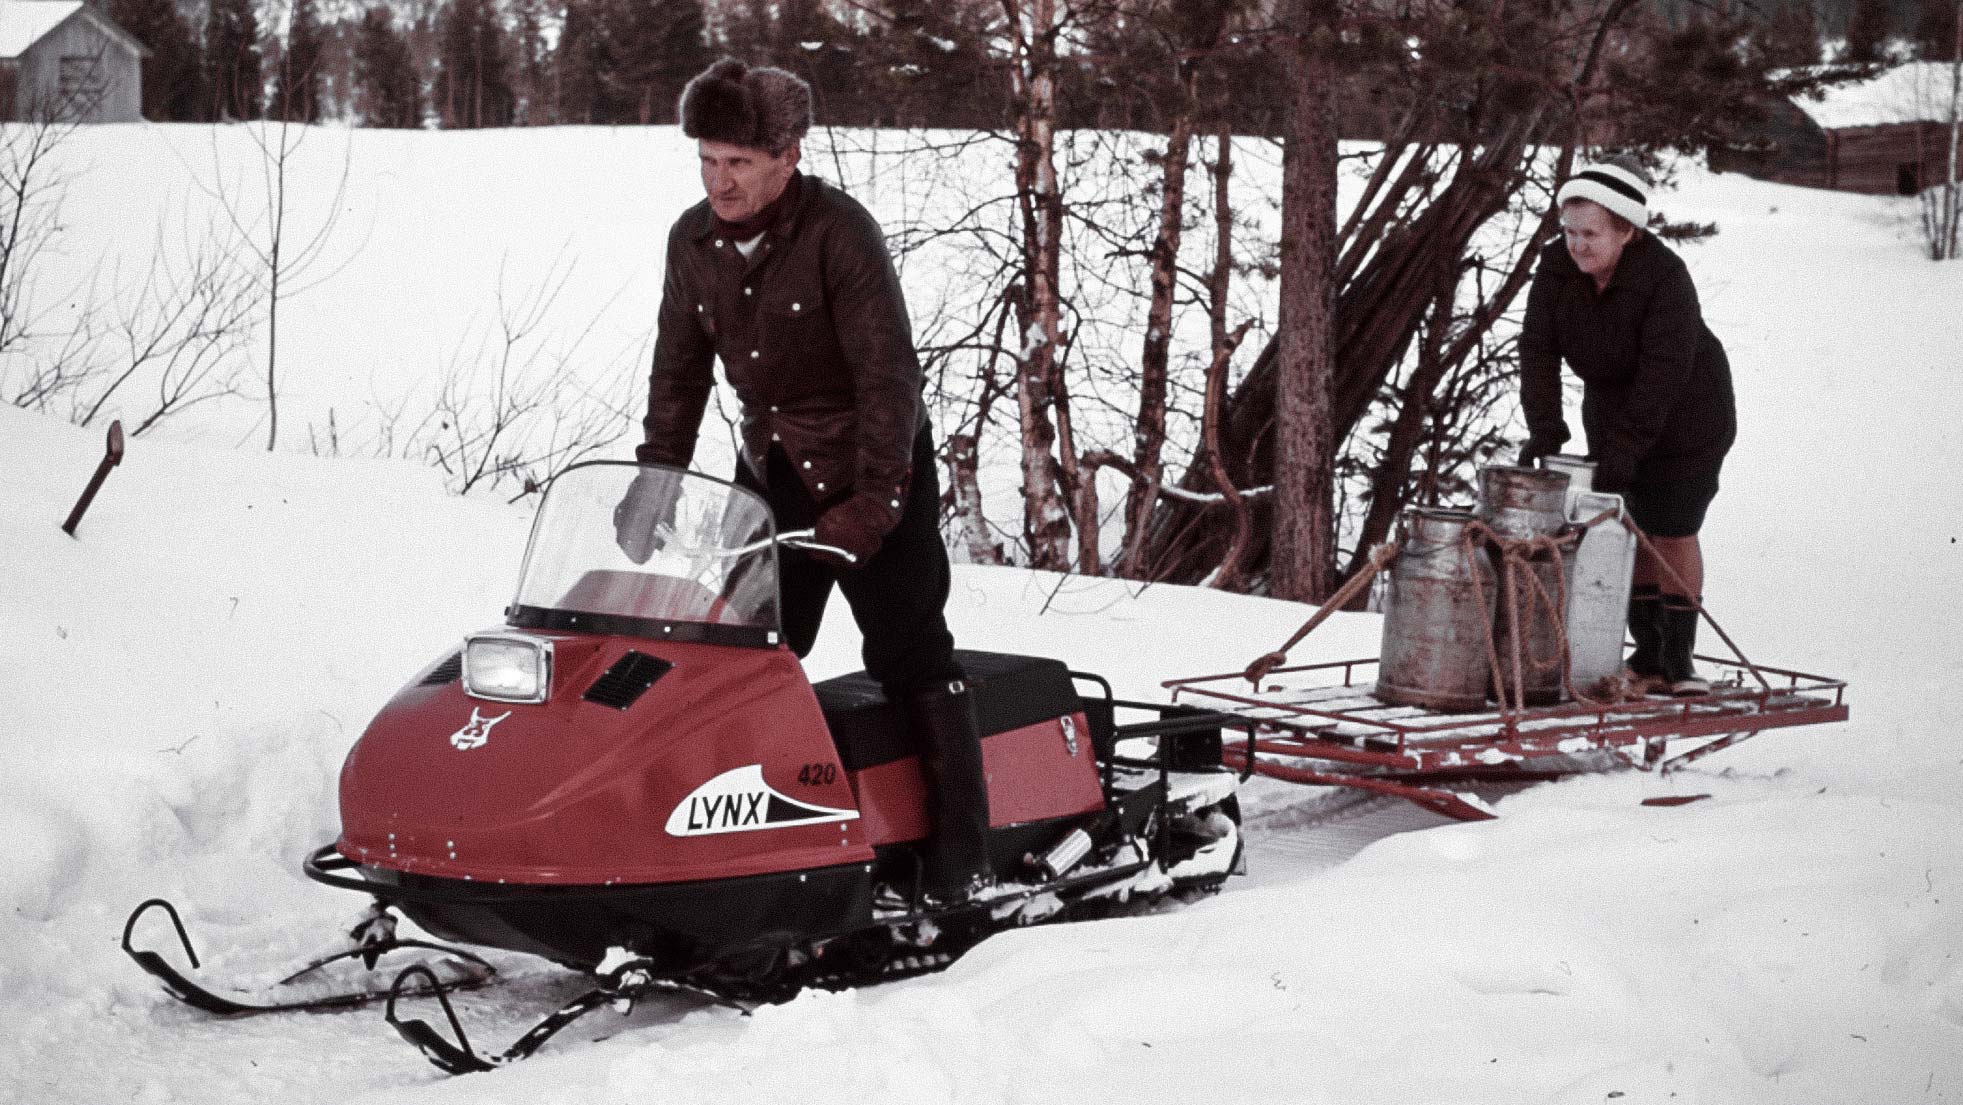 Par drar en släde med Lynx 420 1974 snöskoter